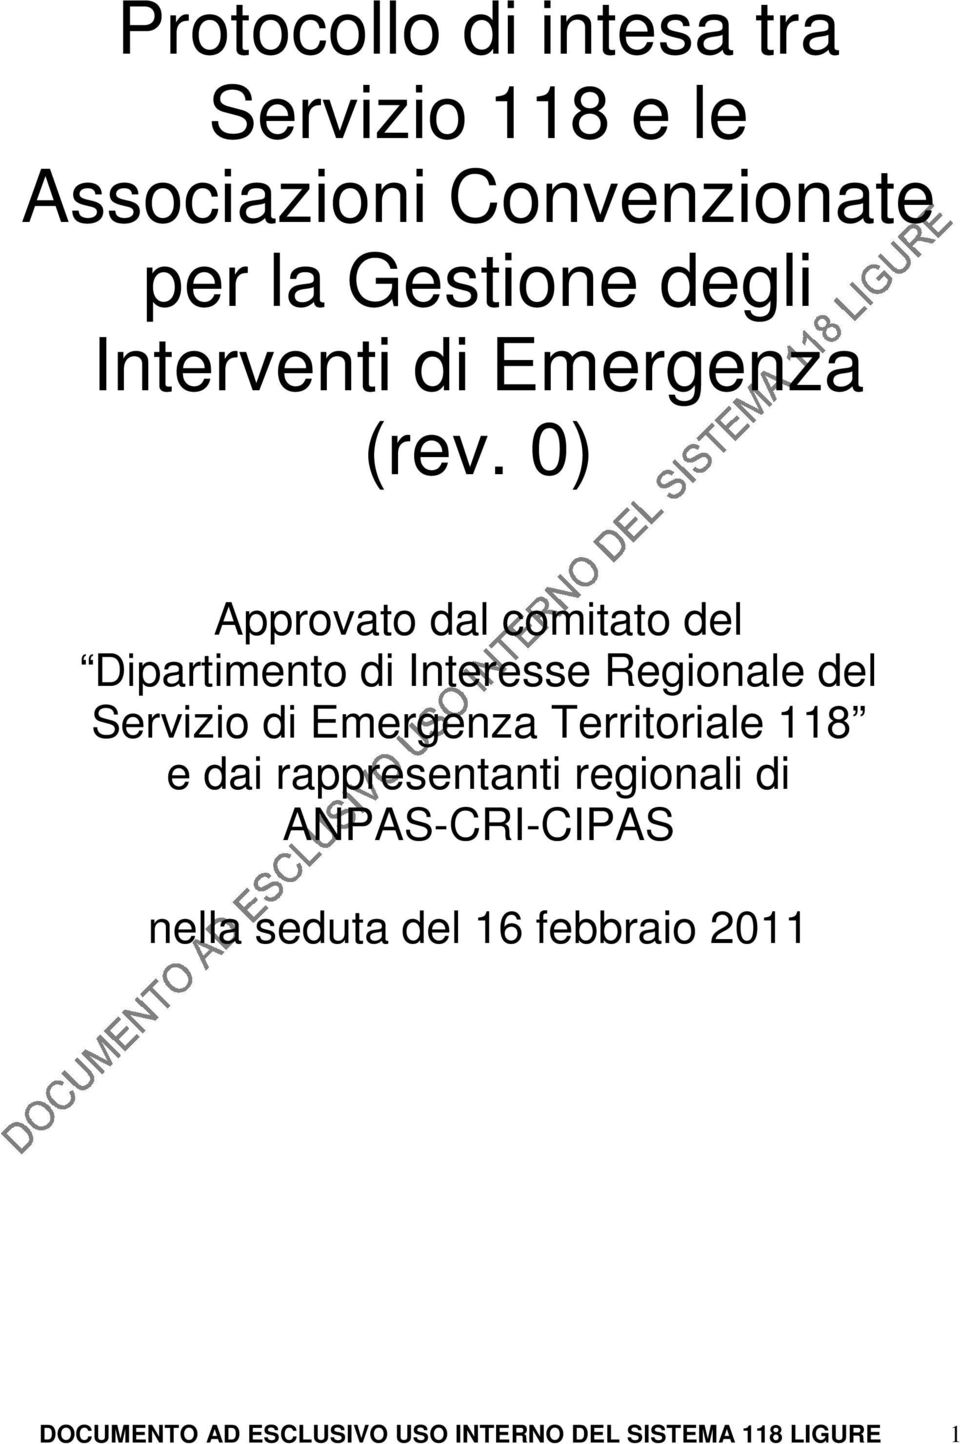 0) Approvato dal comitato del Dipartimento di Interesse Regionale del Servizio di Emergenza